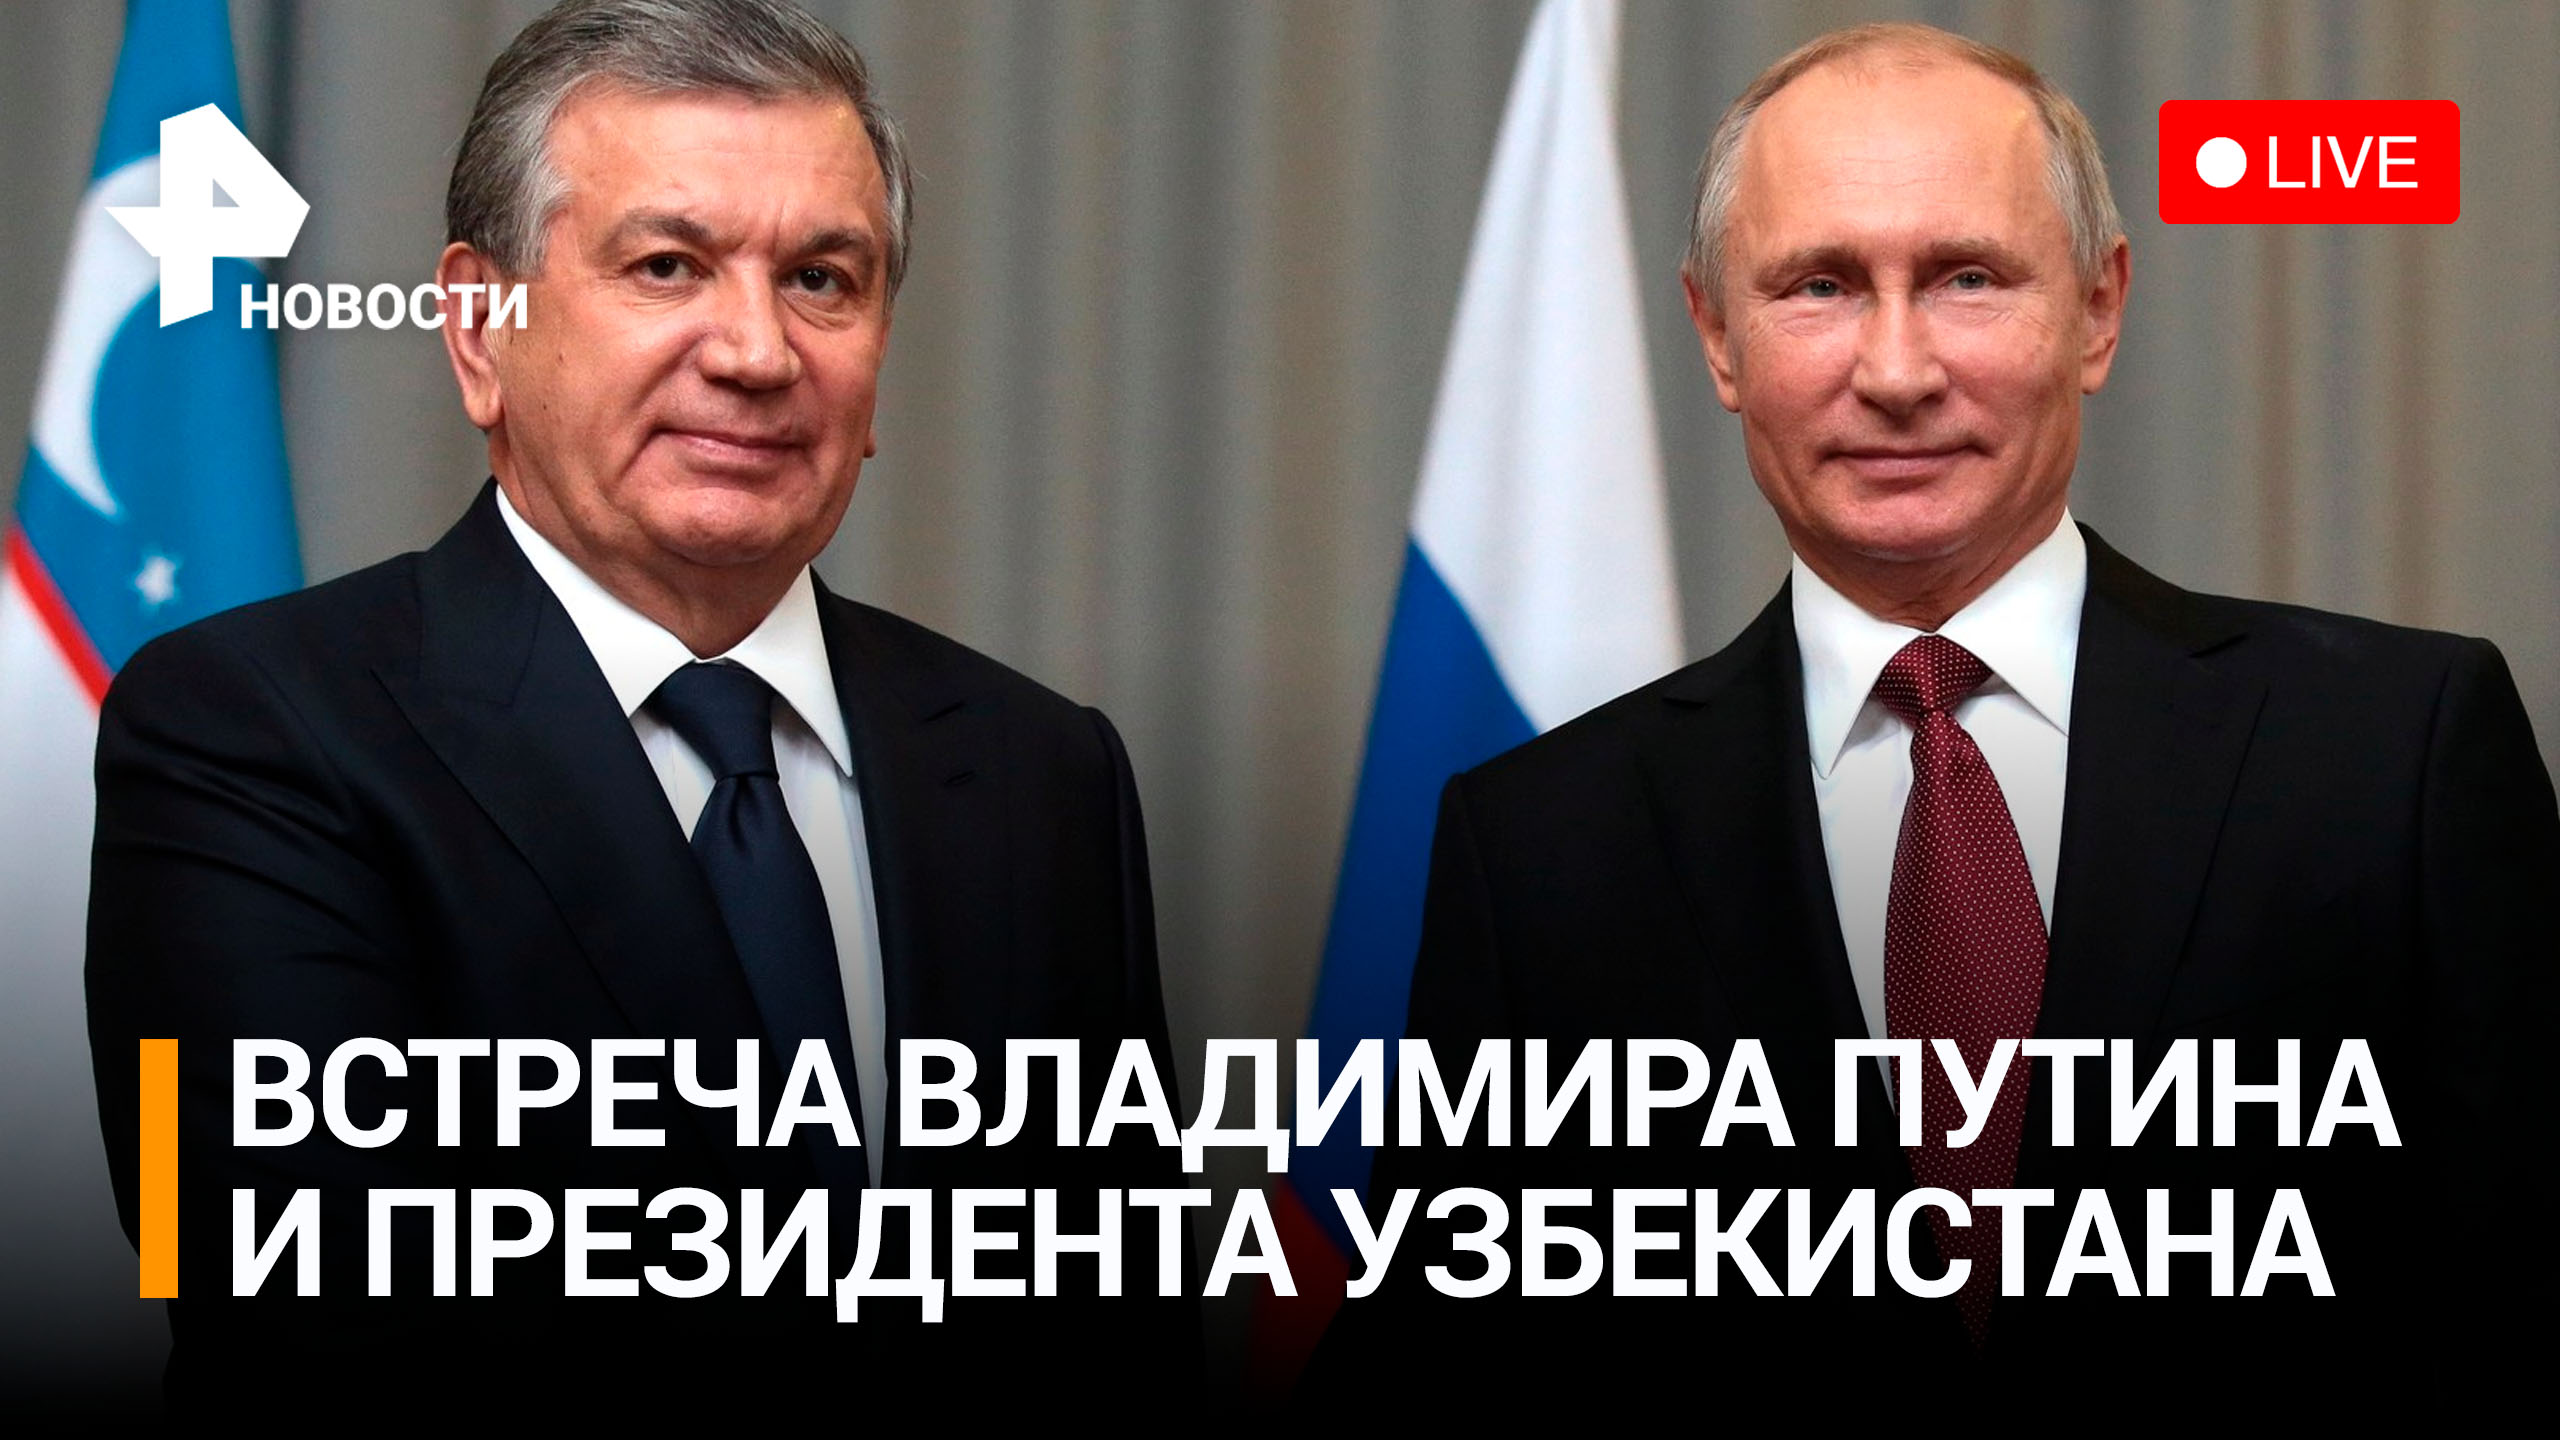 Владимир Путин на встрече с президентом Узбекистана. Прямая трансляция